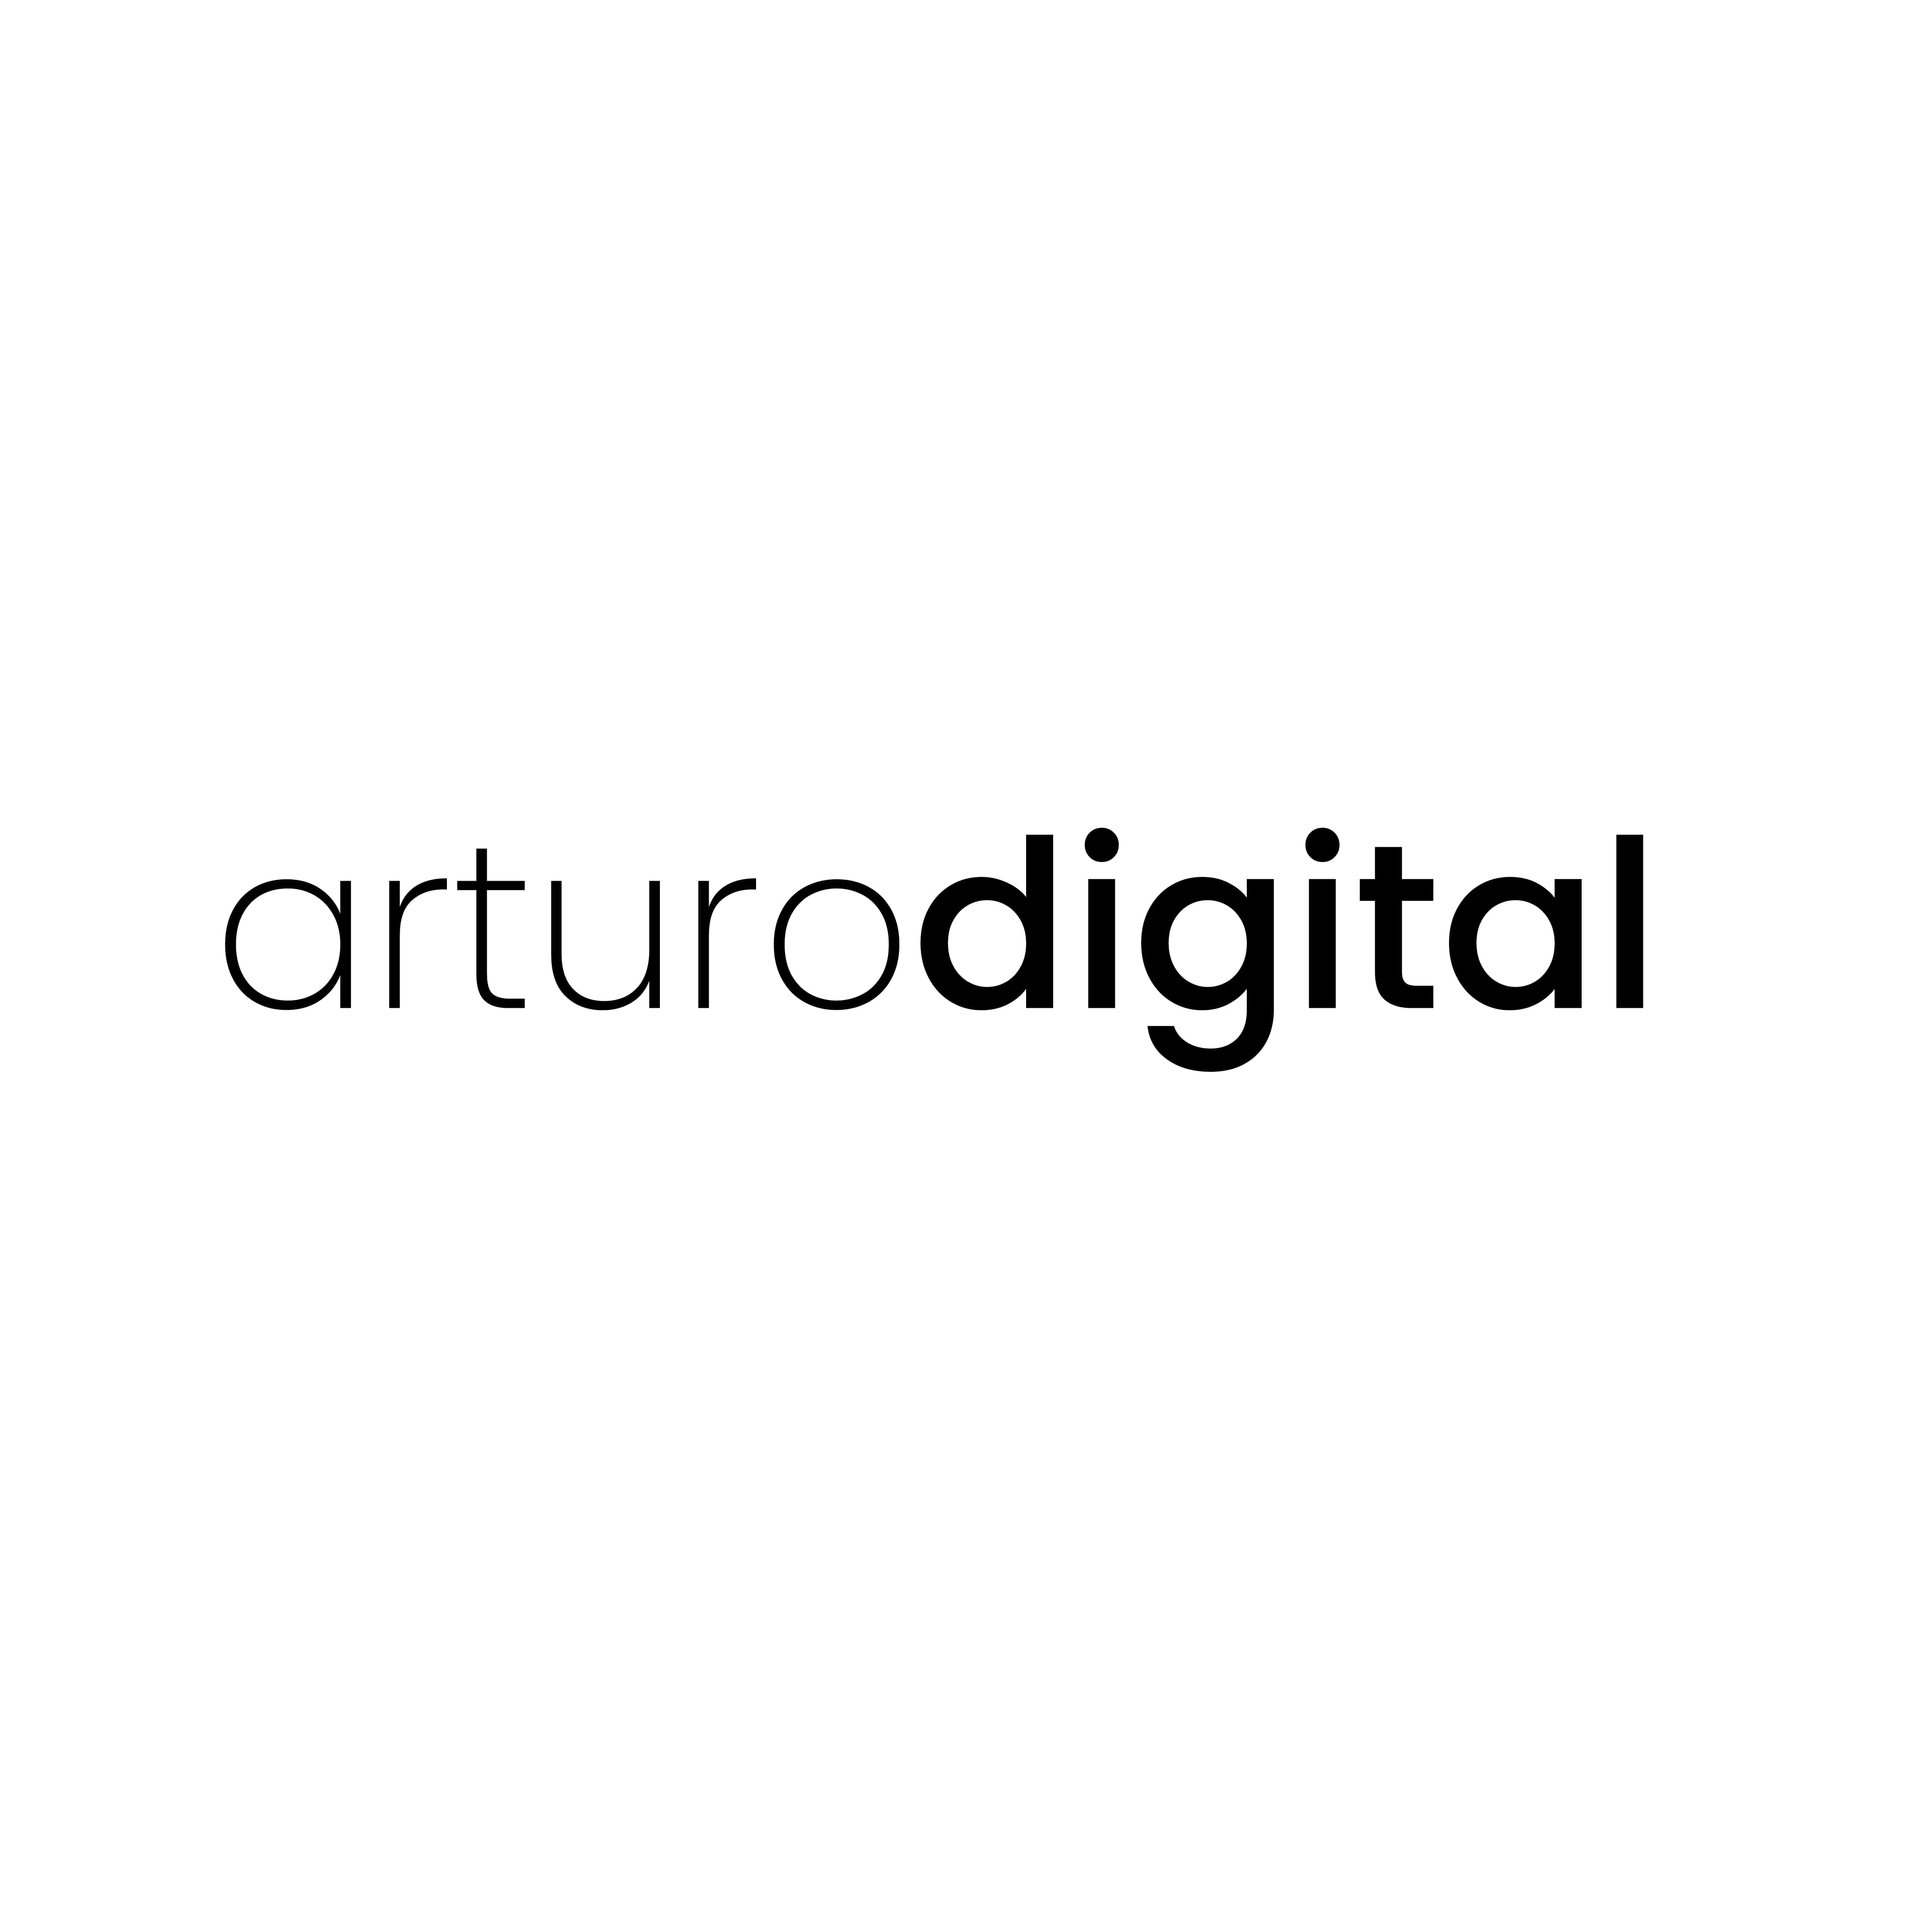 Arturo Digital logo